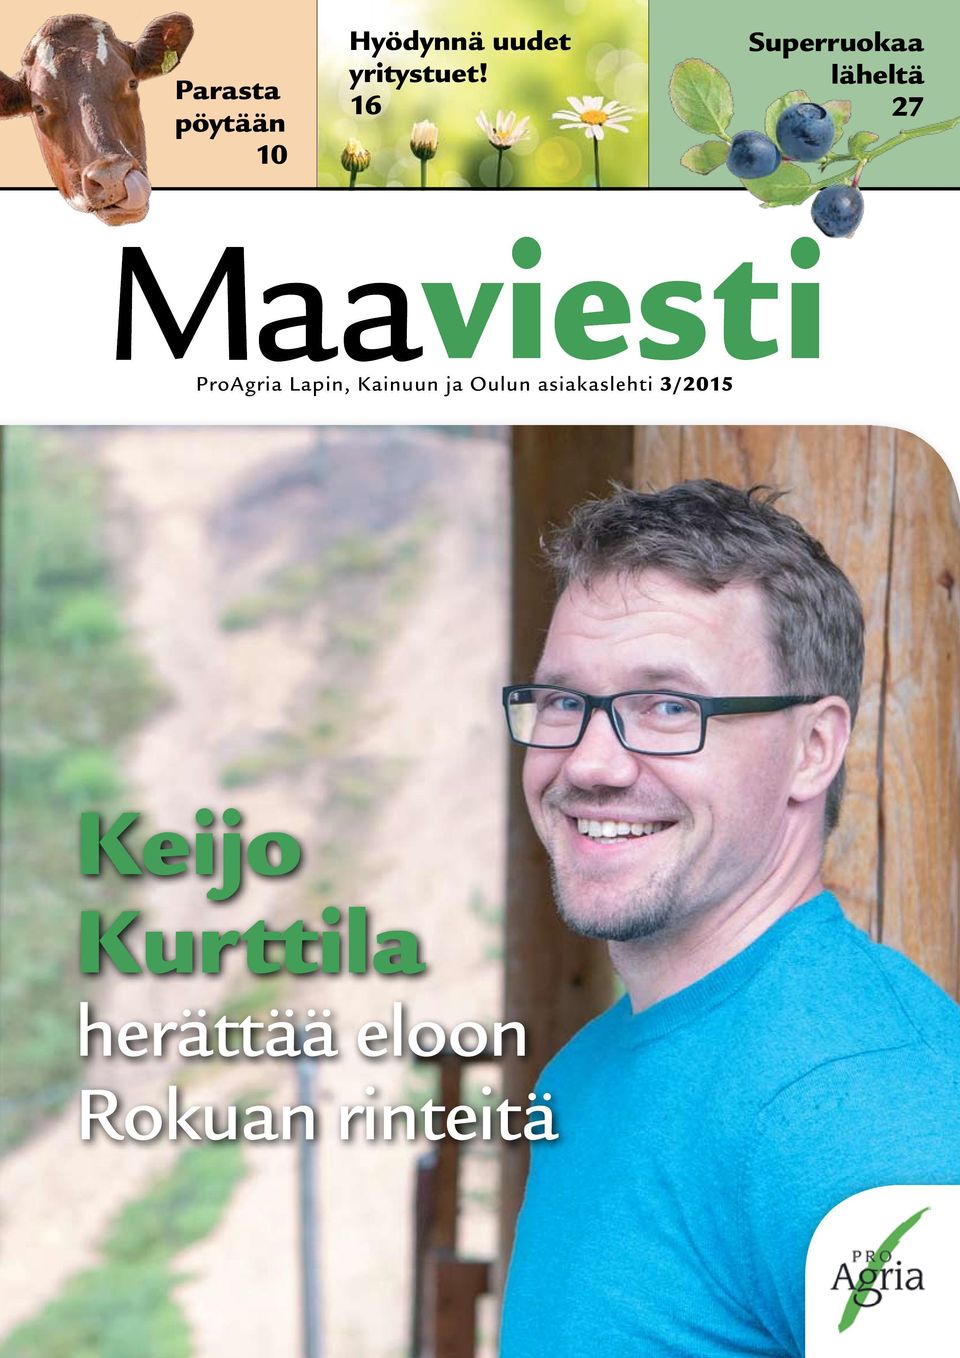 Kainuun ja Oulun asiakaslehti 3/2015 Keijo